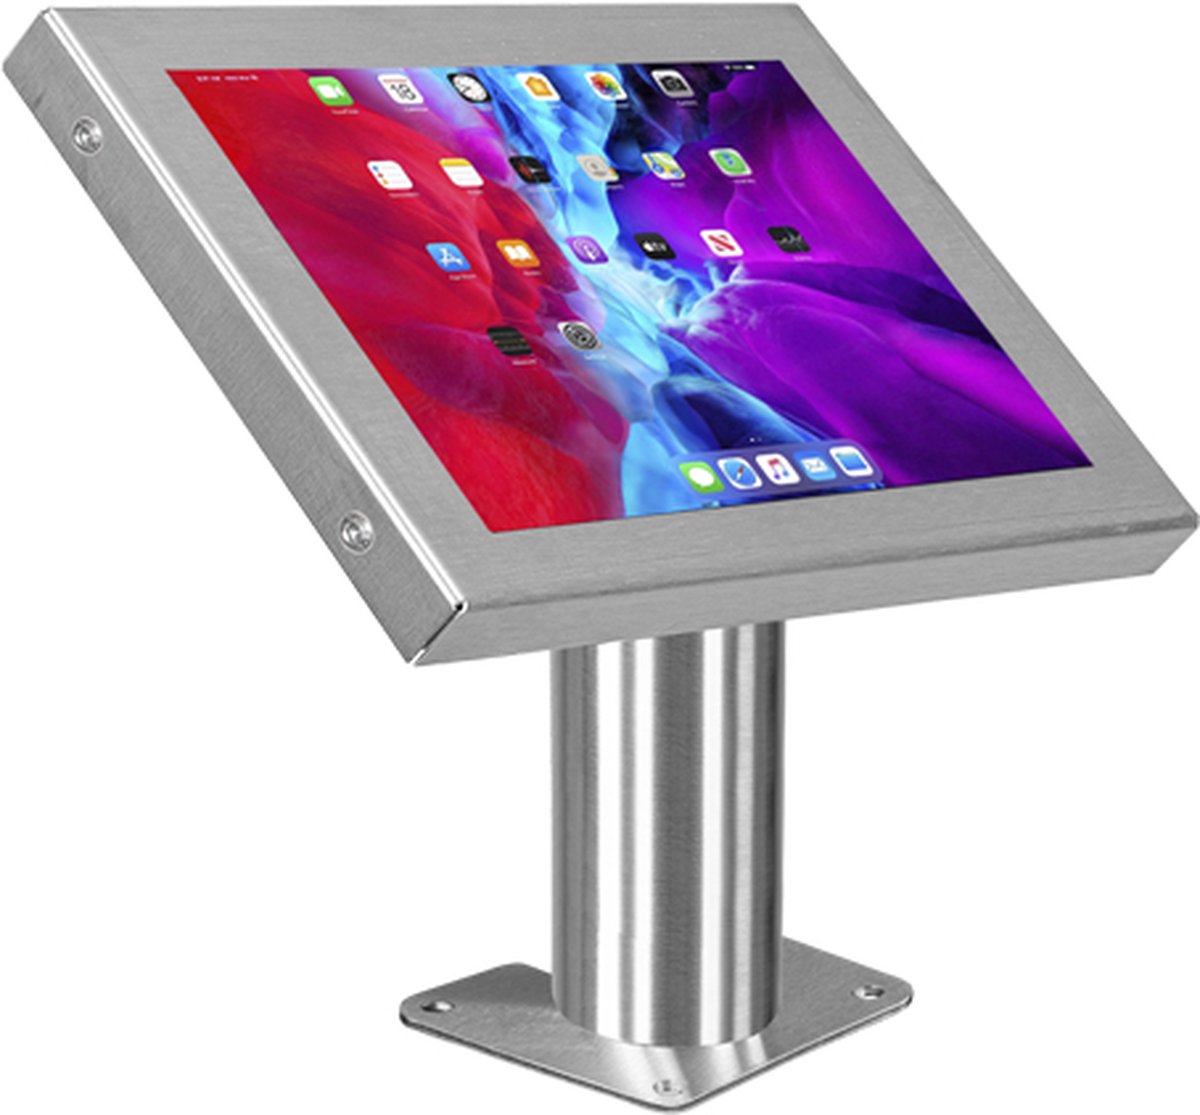 Tablethouder - tabletstandaard - standaard tablet - ipad houder - tablet tafelstandaard - houder voor tablet - voor tablets tussen 12-13 inch - Rvs